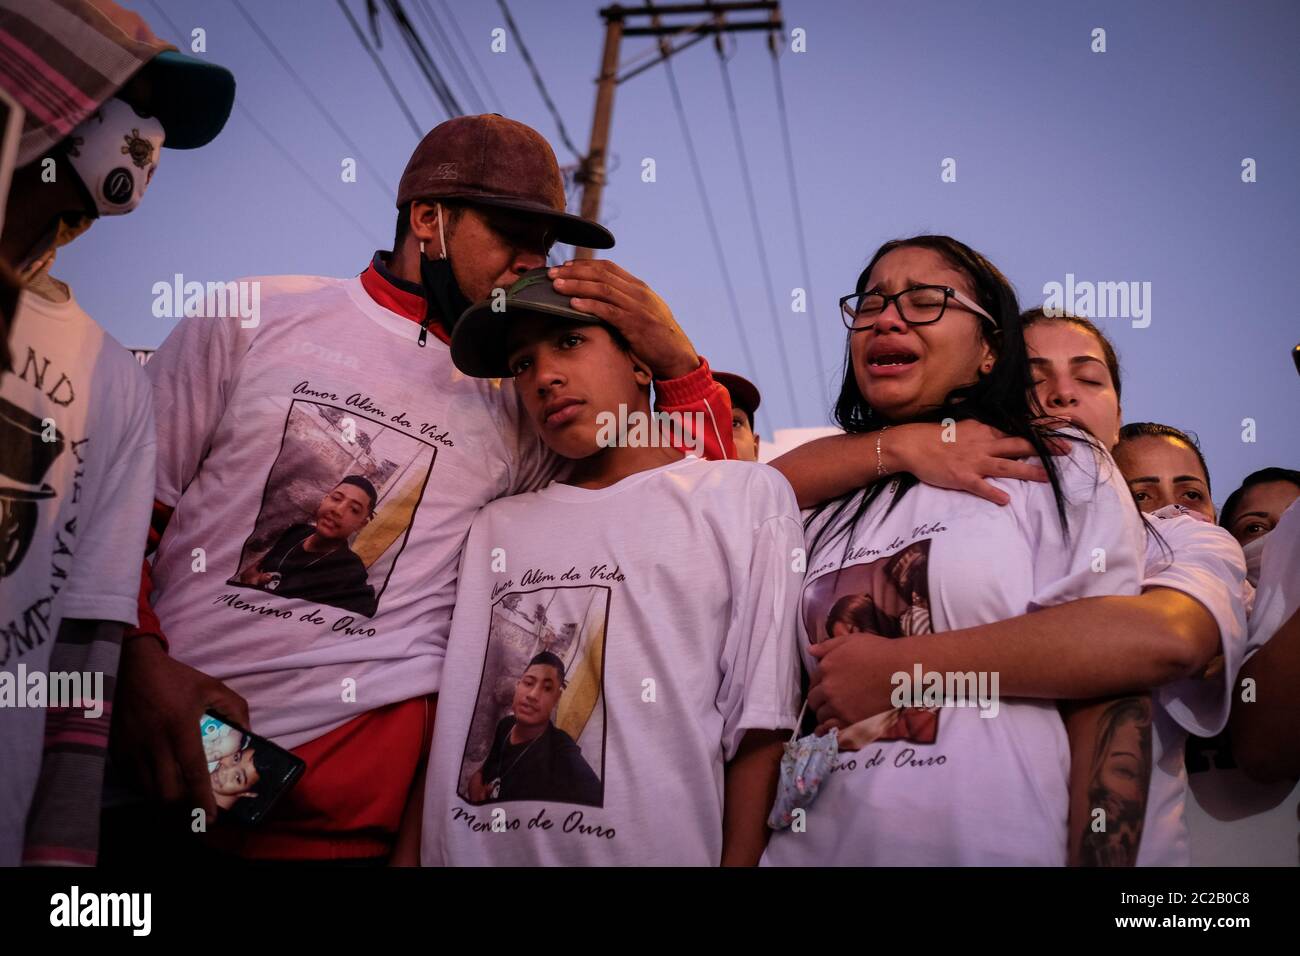 16 juin 2020, Brésil, São Paulo: Les proches de Guilherme Silva Guedes, qui est mort dimanche, pleurent lors d'une manifestation. Les parents de l'homme de 15 ans accusent la police militaire de mort. Photo: Lincon Zarbietti/dpa Banque D'Images